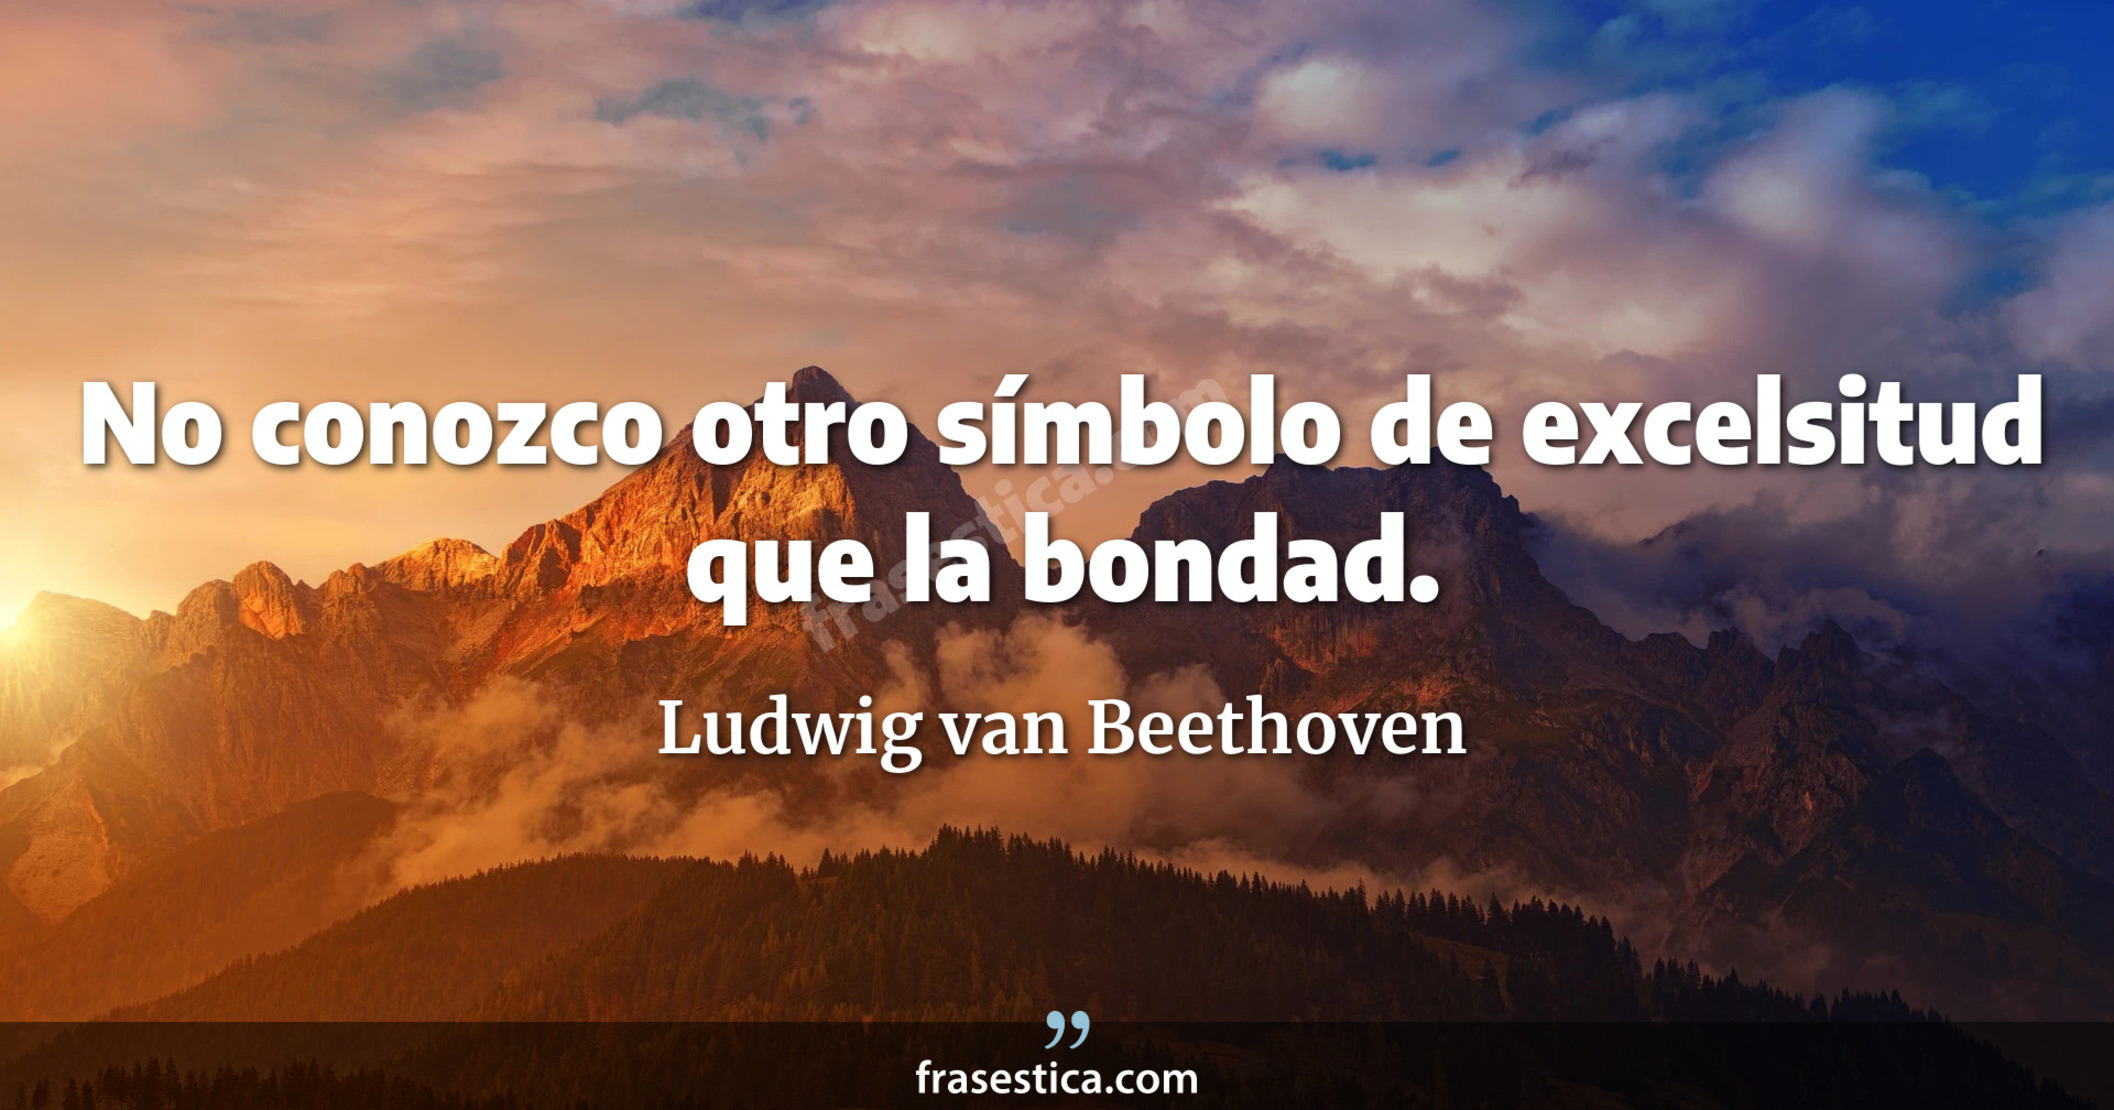 No conozco otro símbolo de excelsitud que la bondad. - Ludwig van Beethoven